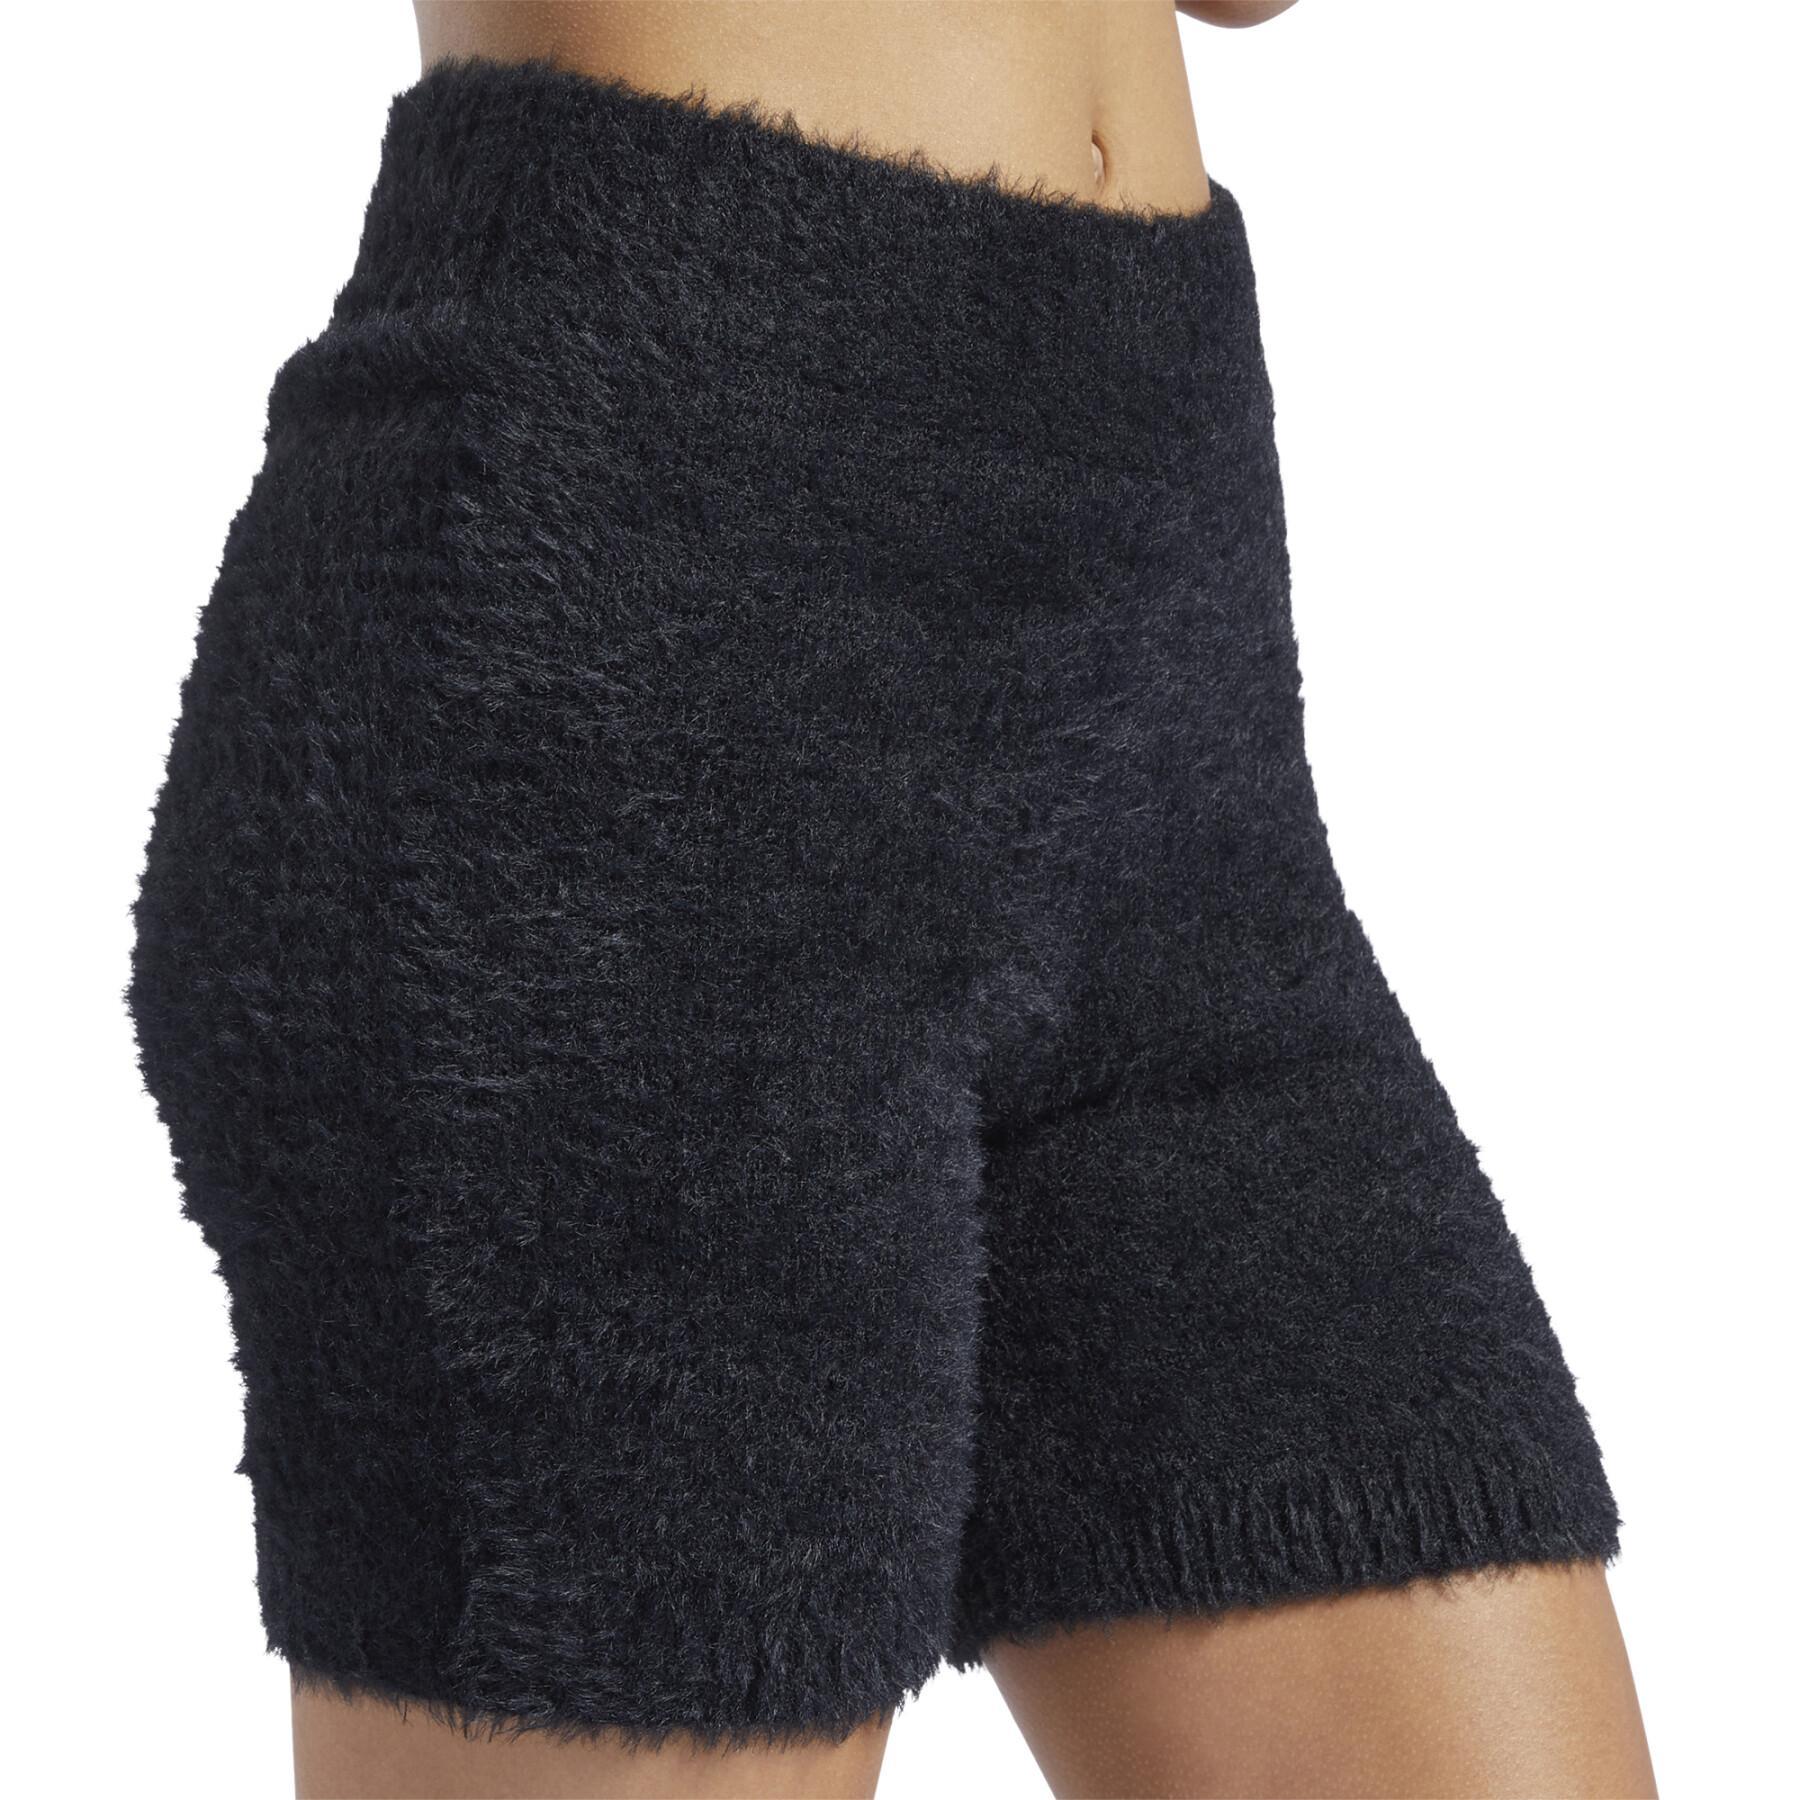 Dames shorts Reebok Classics Cozy